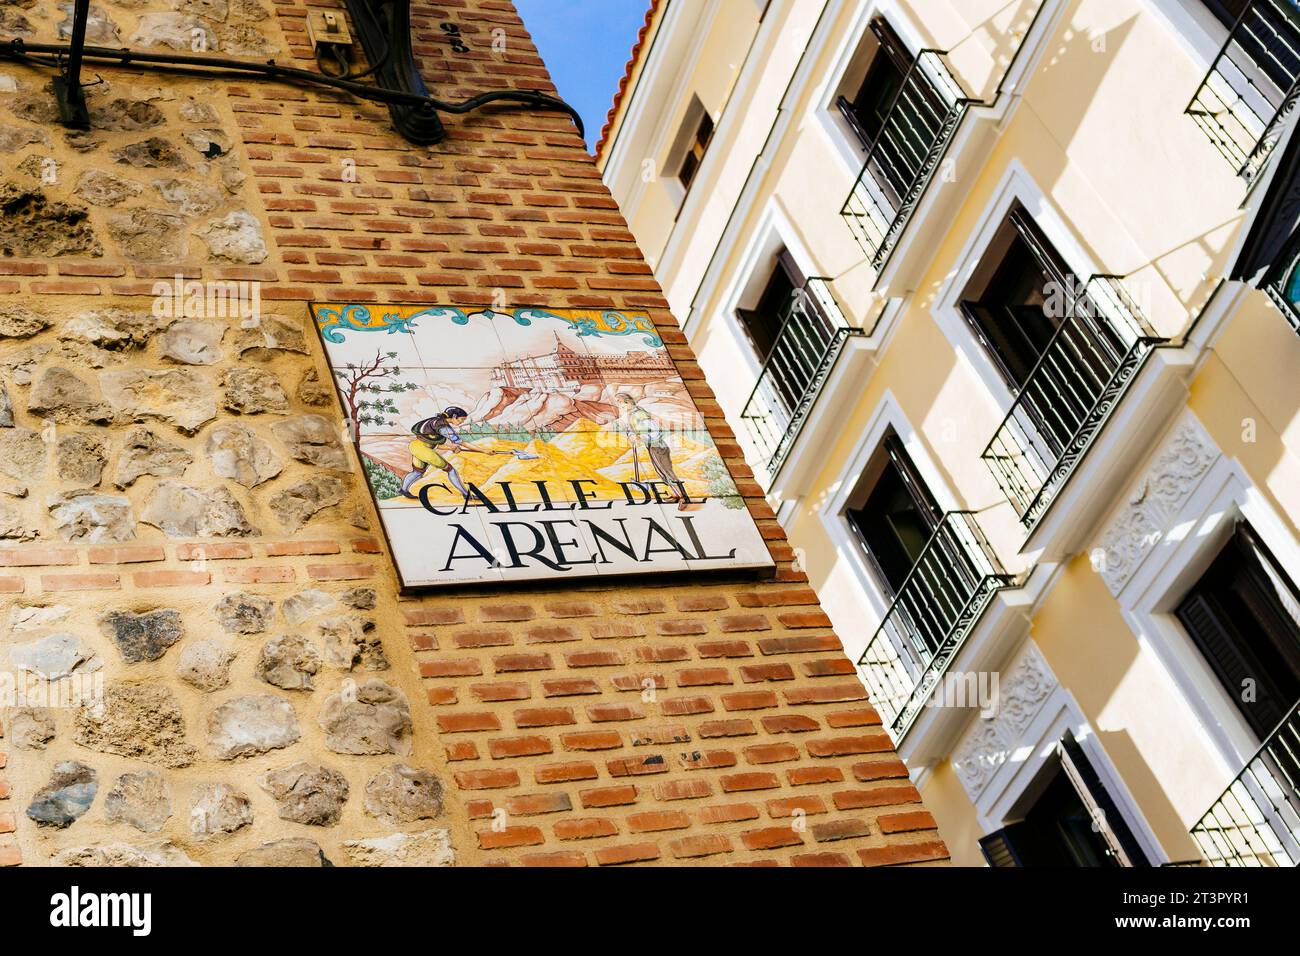 Insegna di strada tradizionale piastrellata, Calle Arenal - via Arenal. Madrid, Comunidad de Madrid, Spagna, Europa Foto Stock